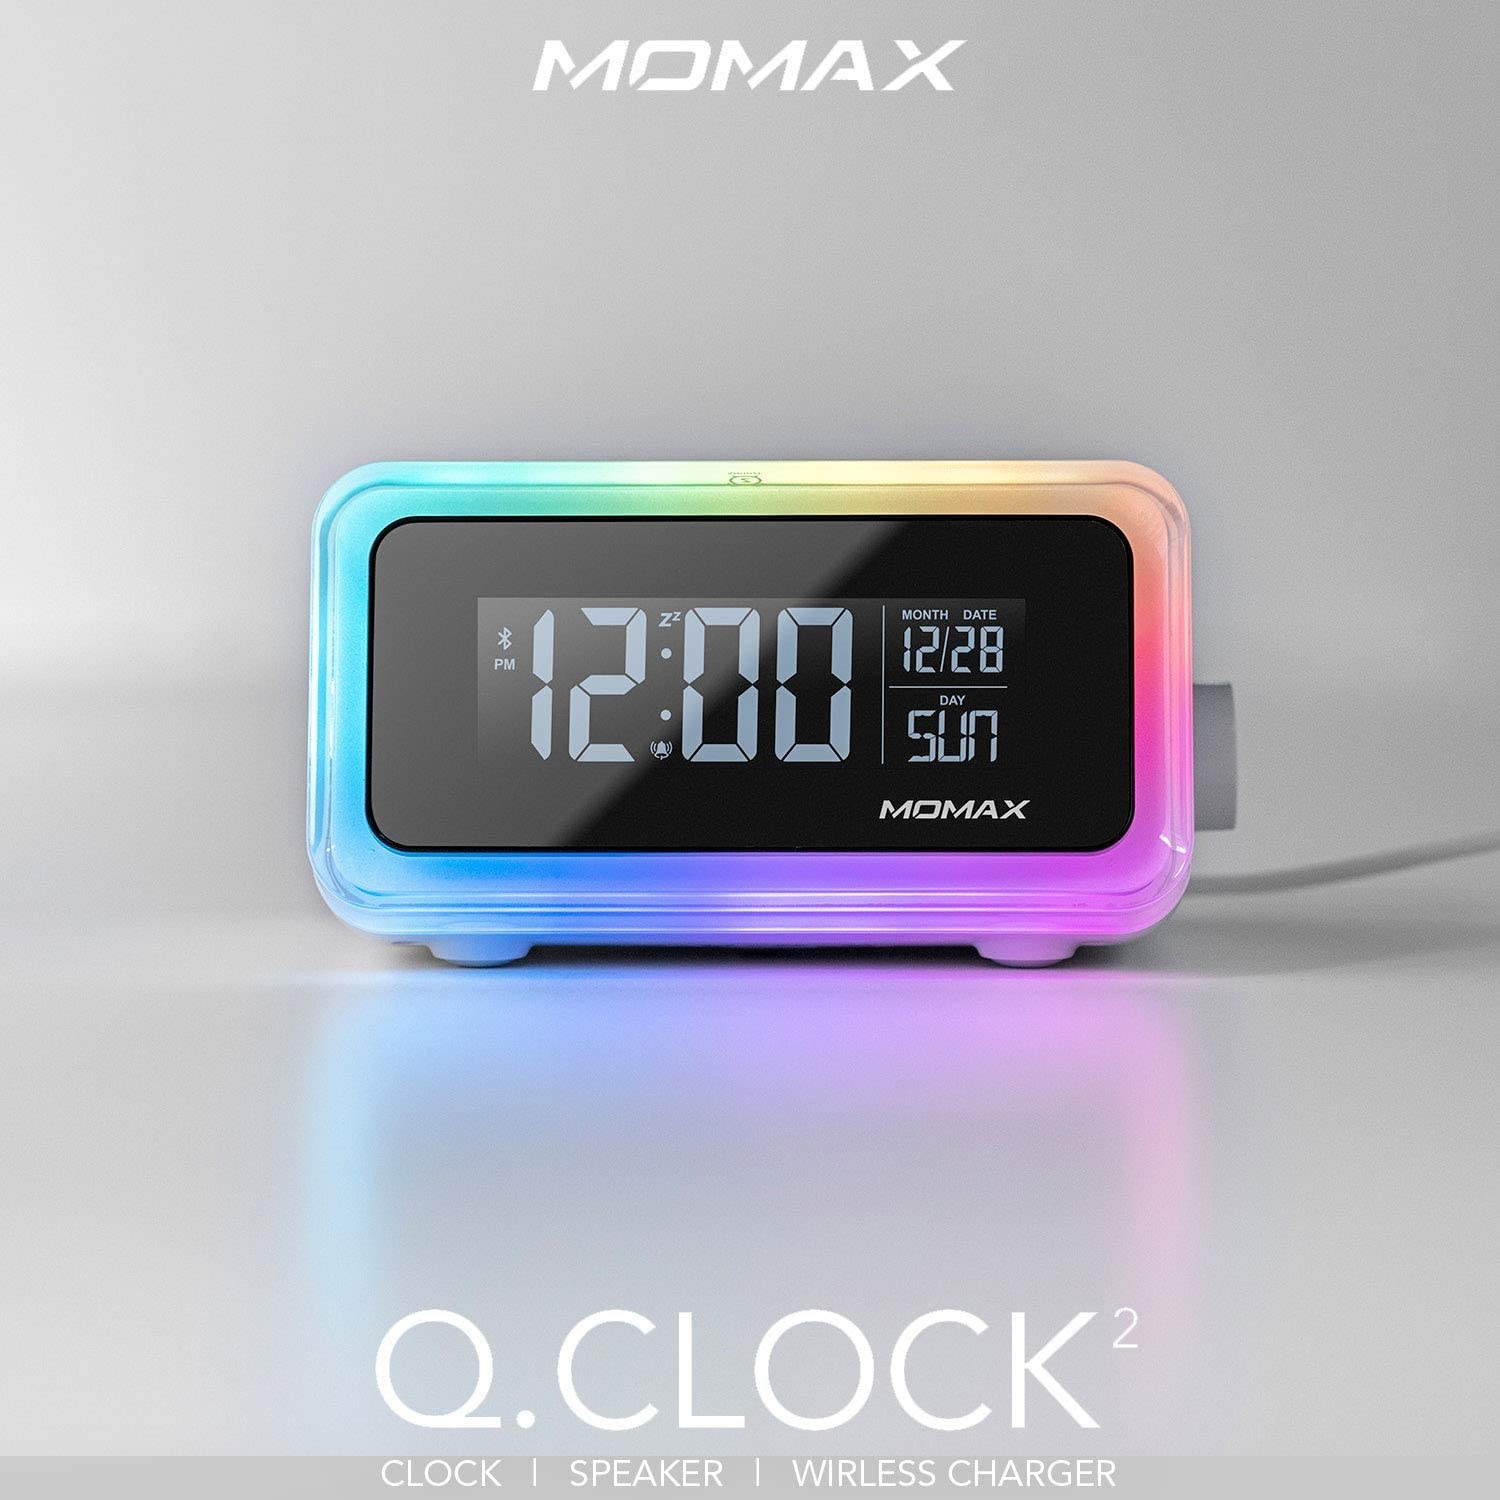 ساعة رقمية مع شاحن لاسلكي Q.CLOCK 2 MOMAX - أبيض